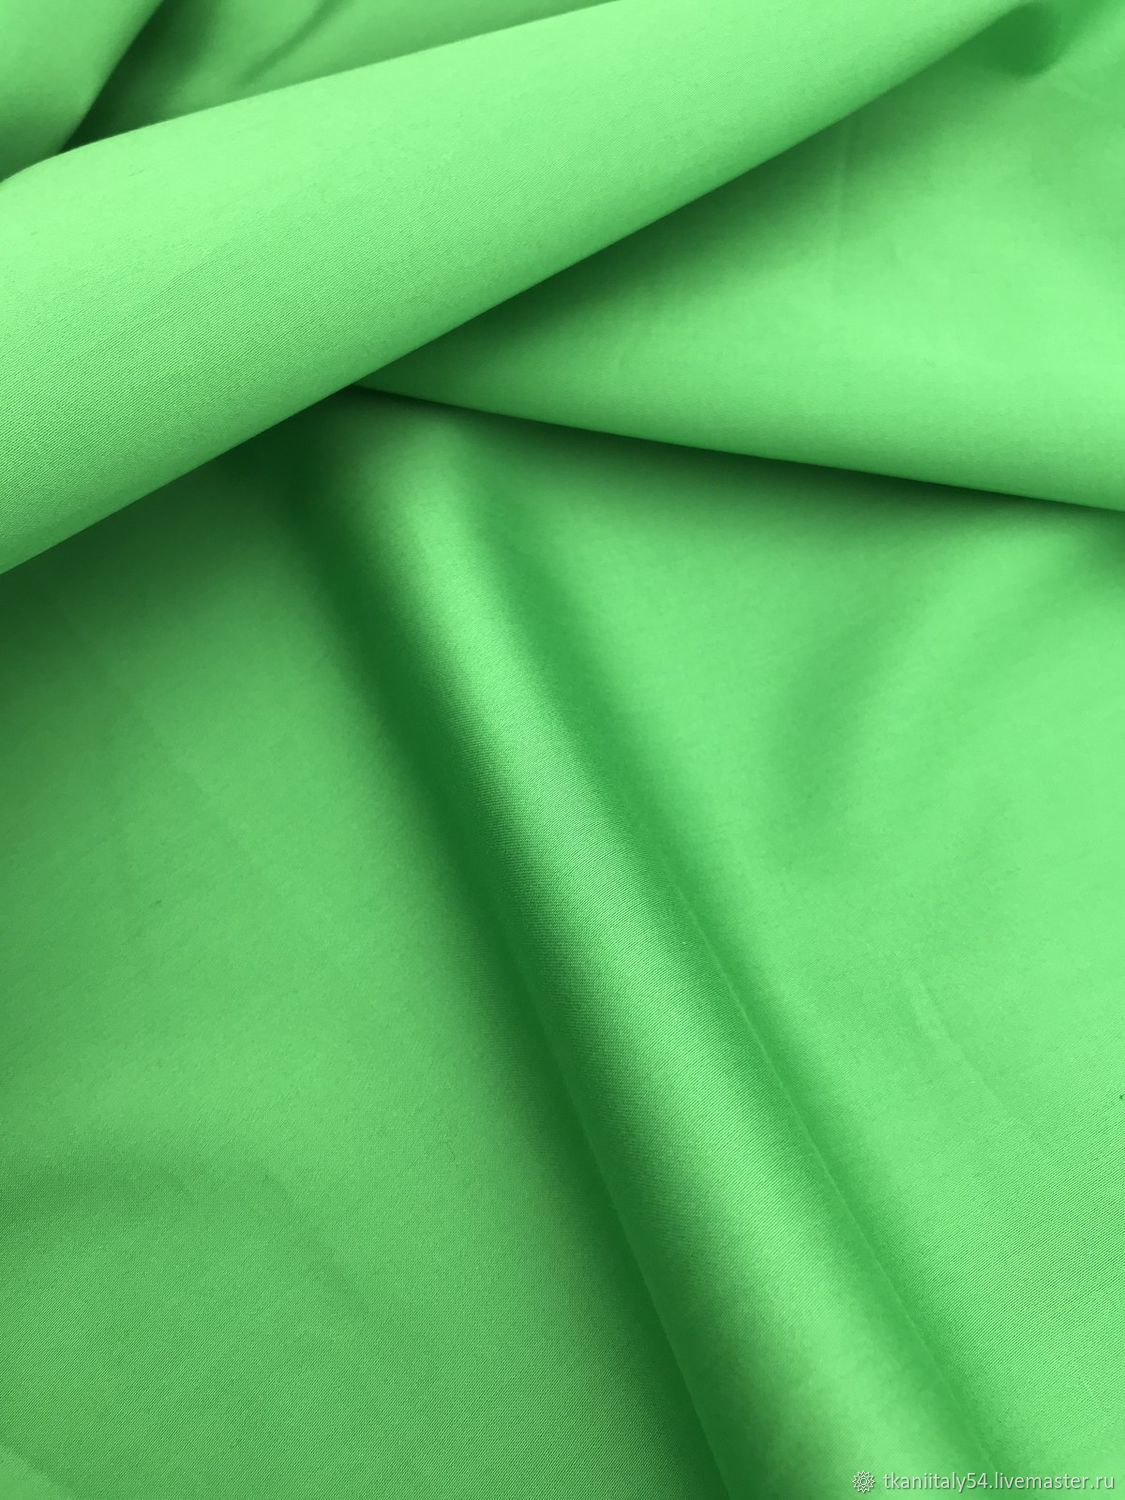 Костюмный хлопок. Зеленый цвет ткани. Хлопок костюмный зеленый прозрачный. Хлопок артикул.